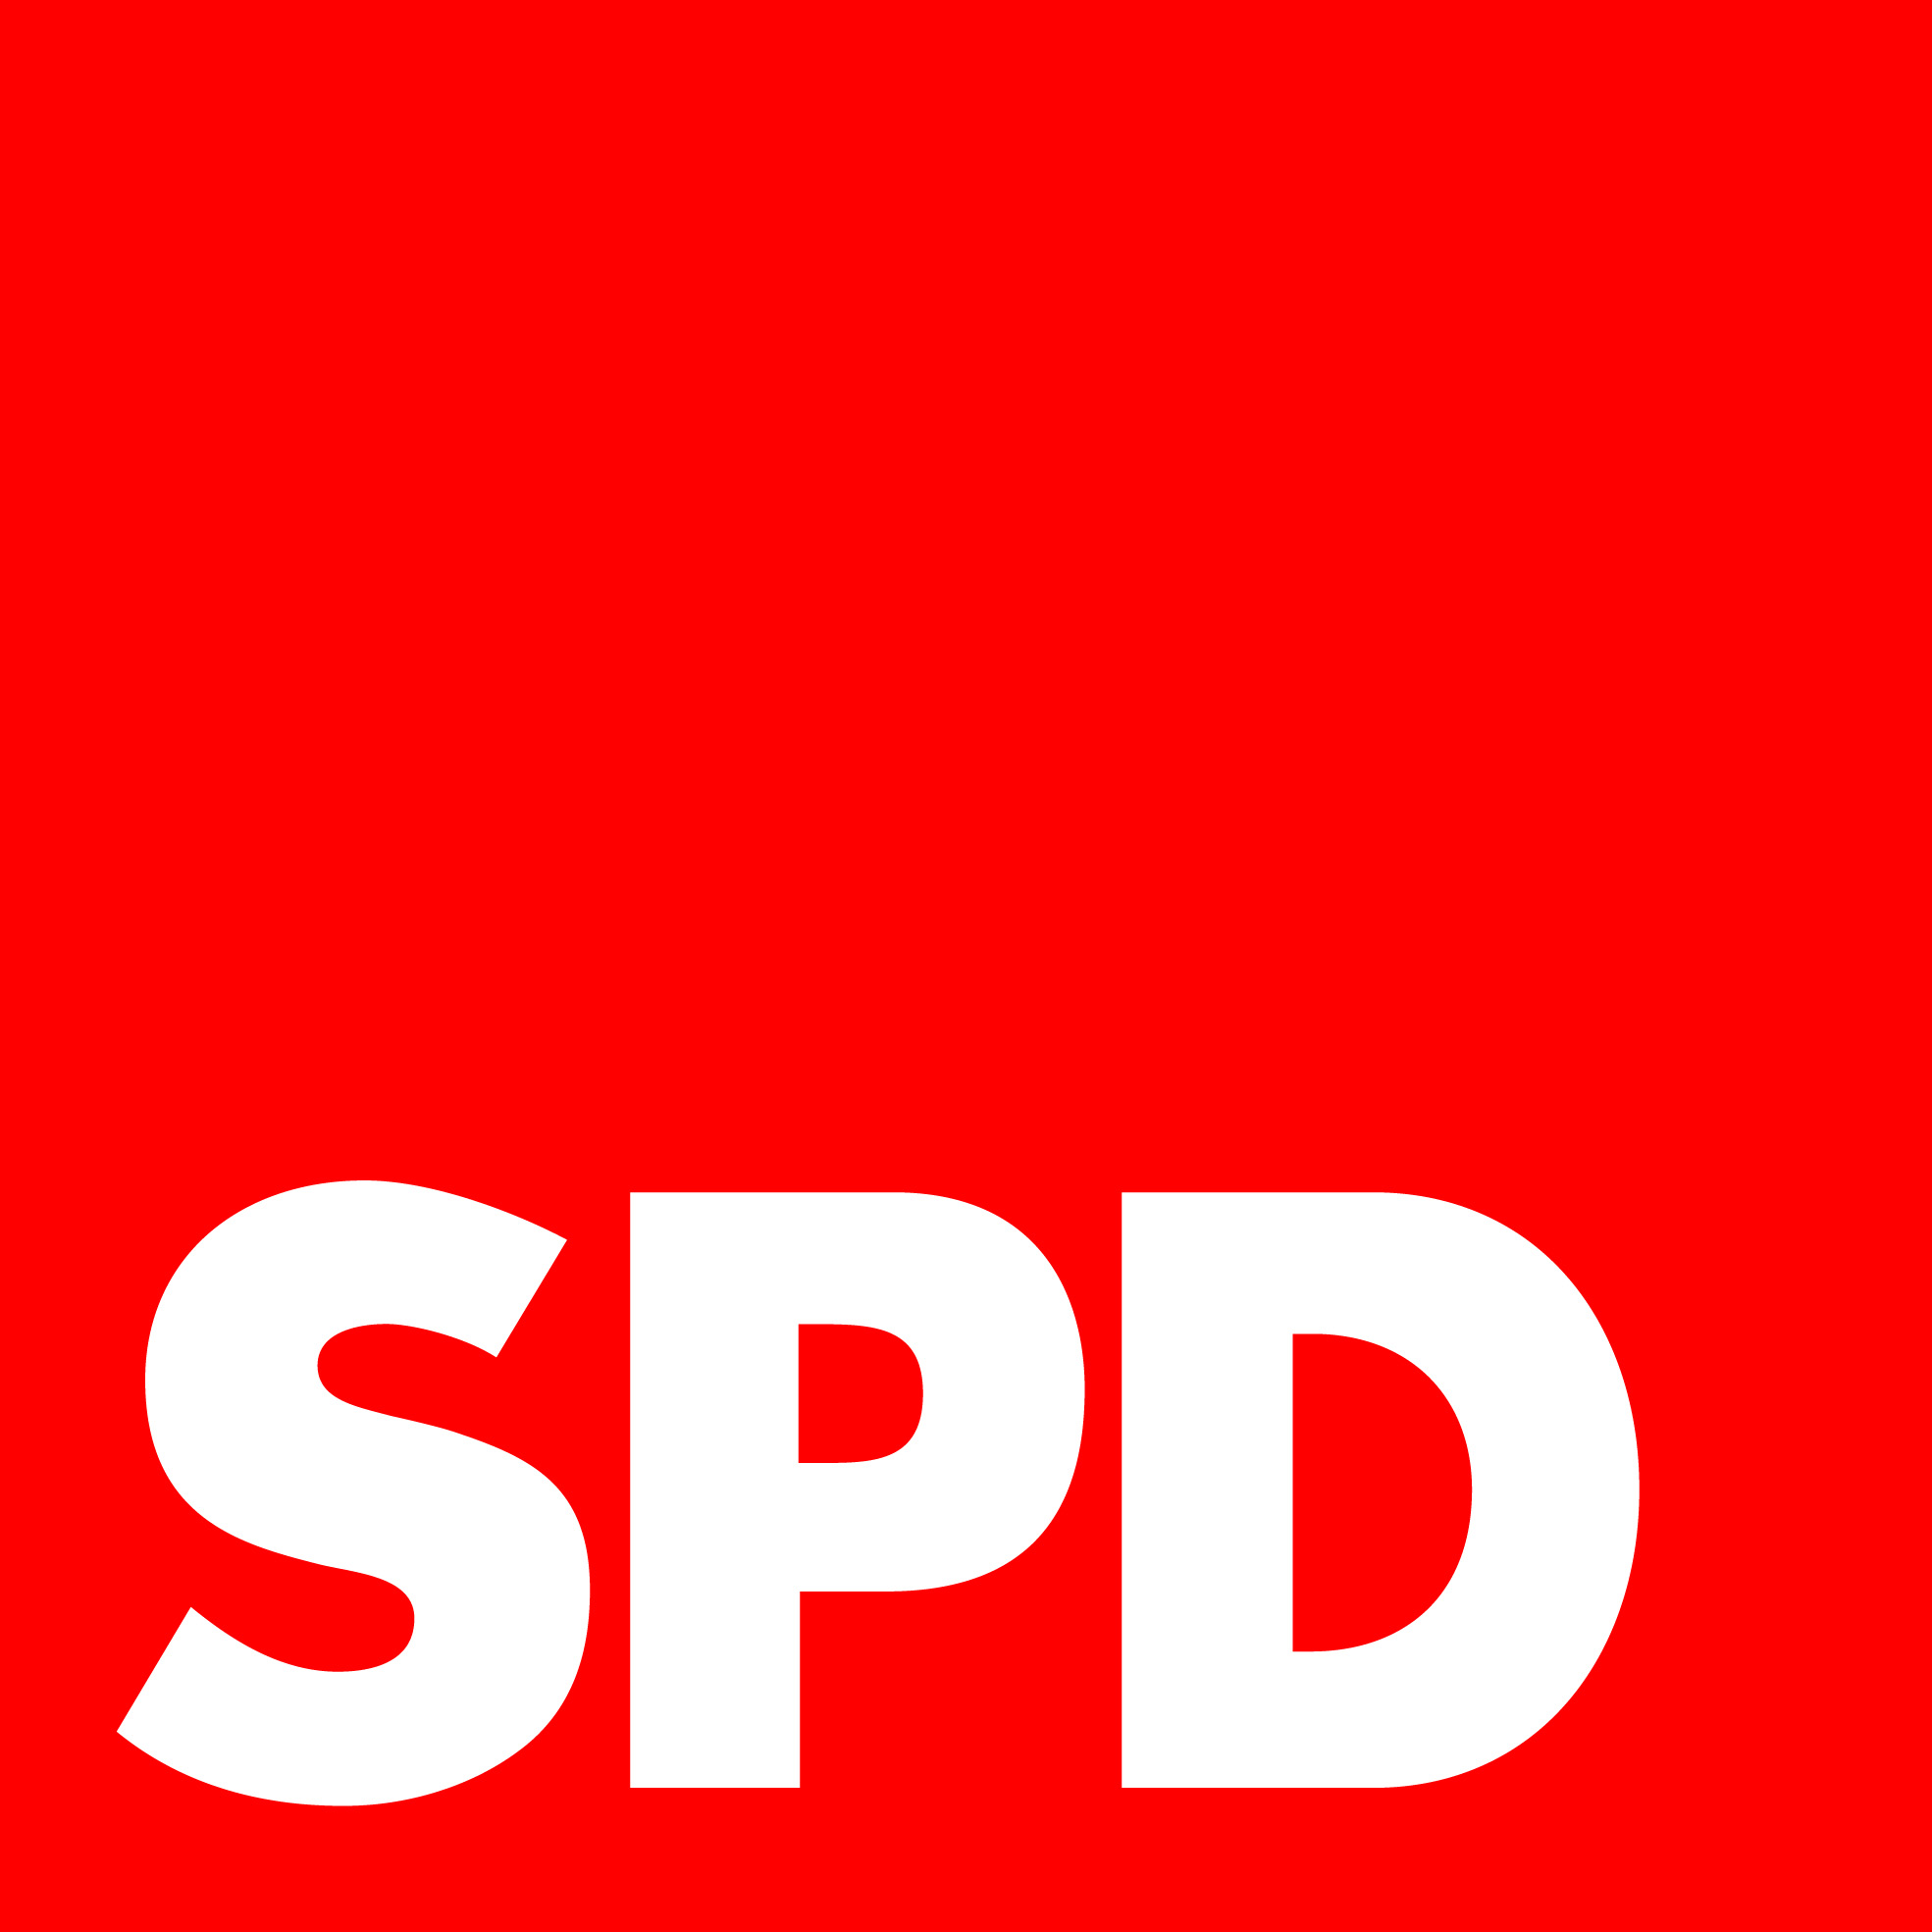 spd logo jpg data